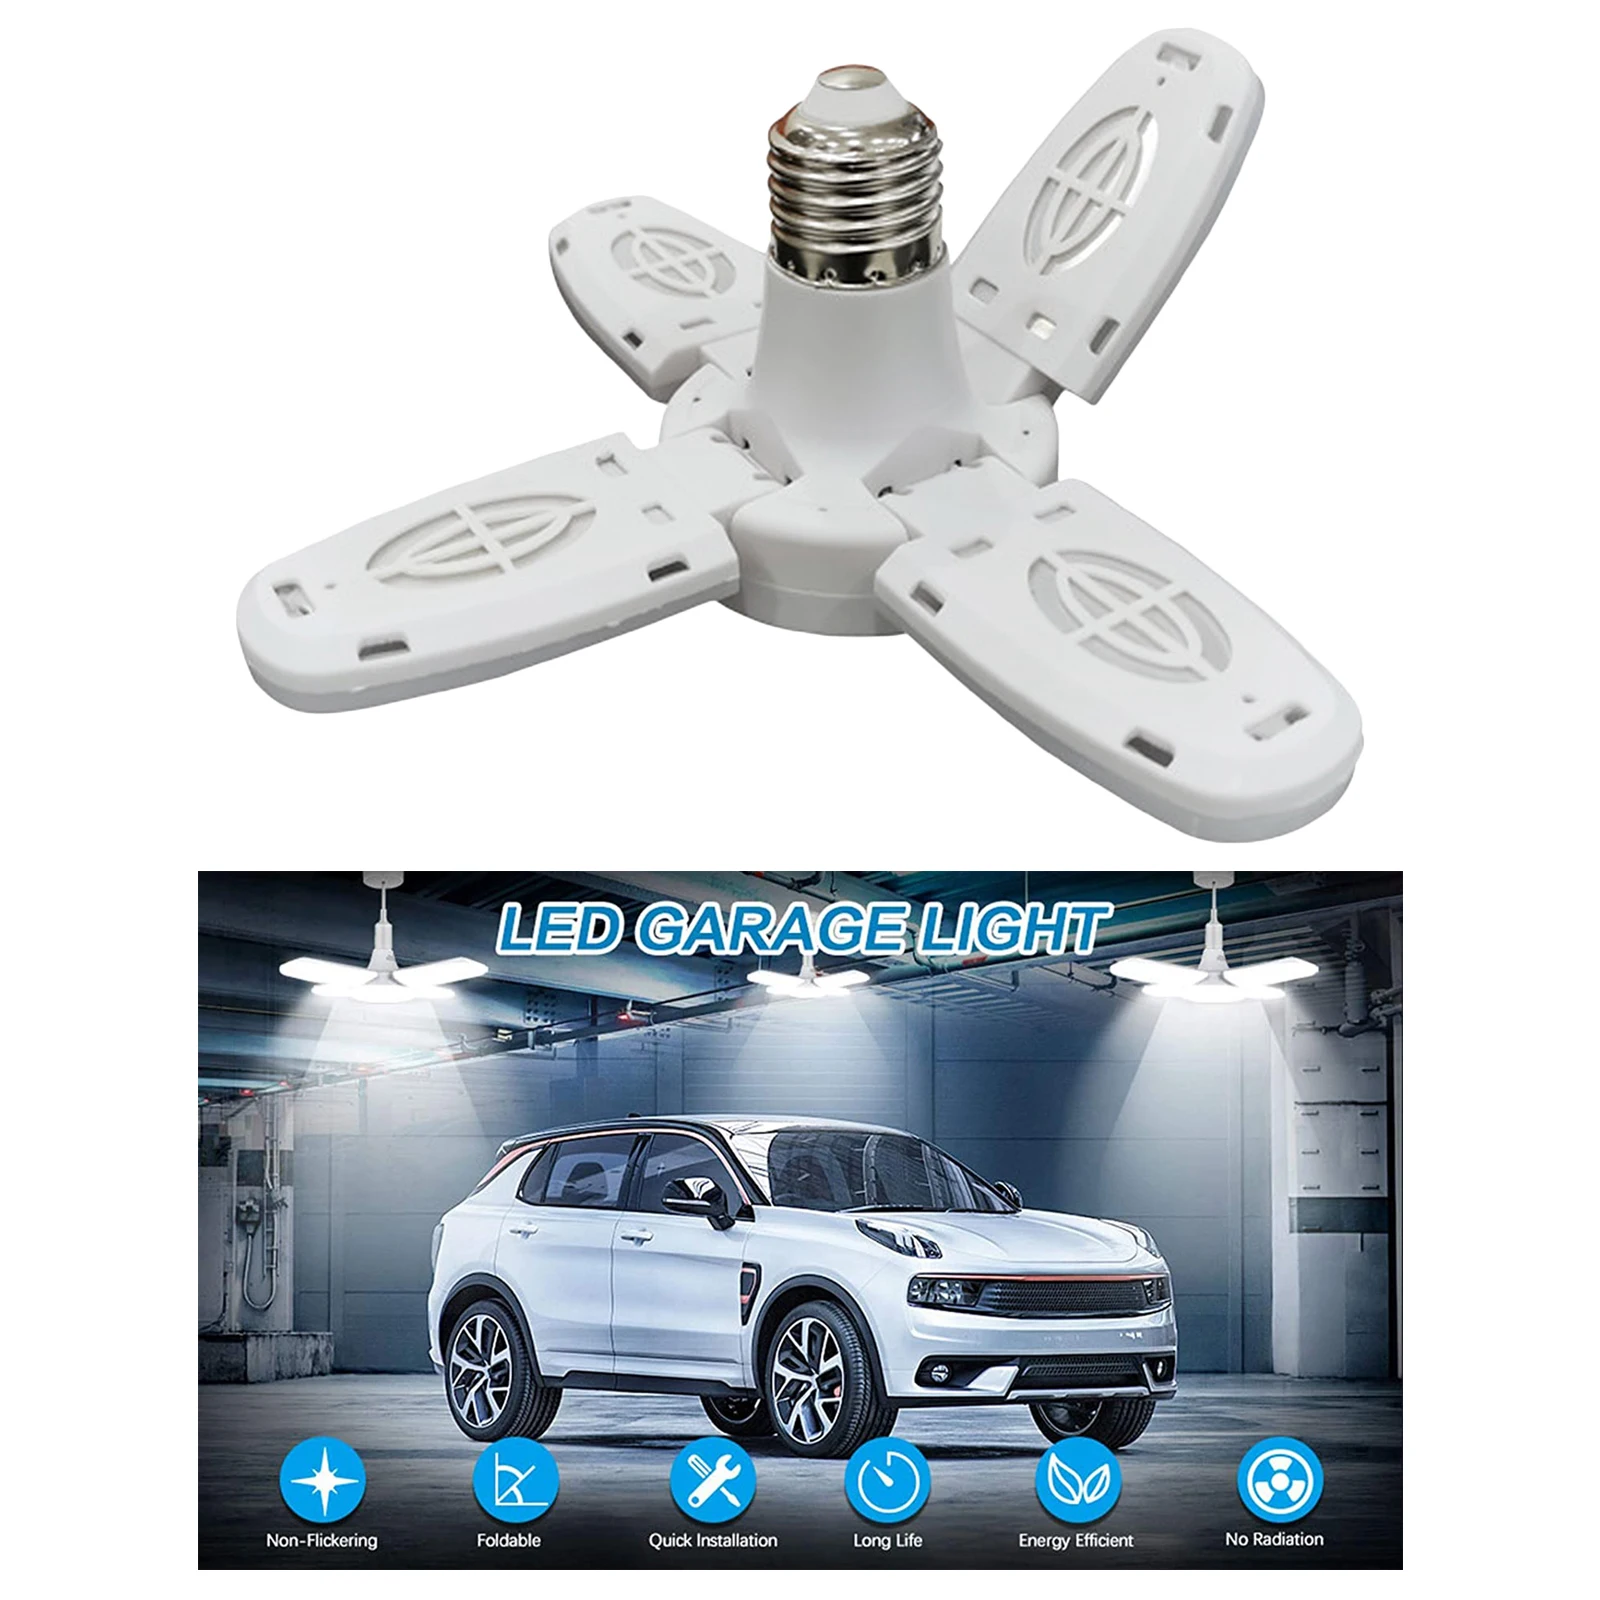 LED Garage Light, 28W E27 2300lm Deformable LED Garage Ceiling Lights Garage LED Light with 4 Adjustable LED Panels